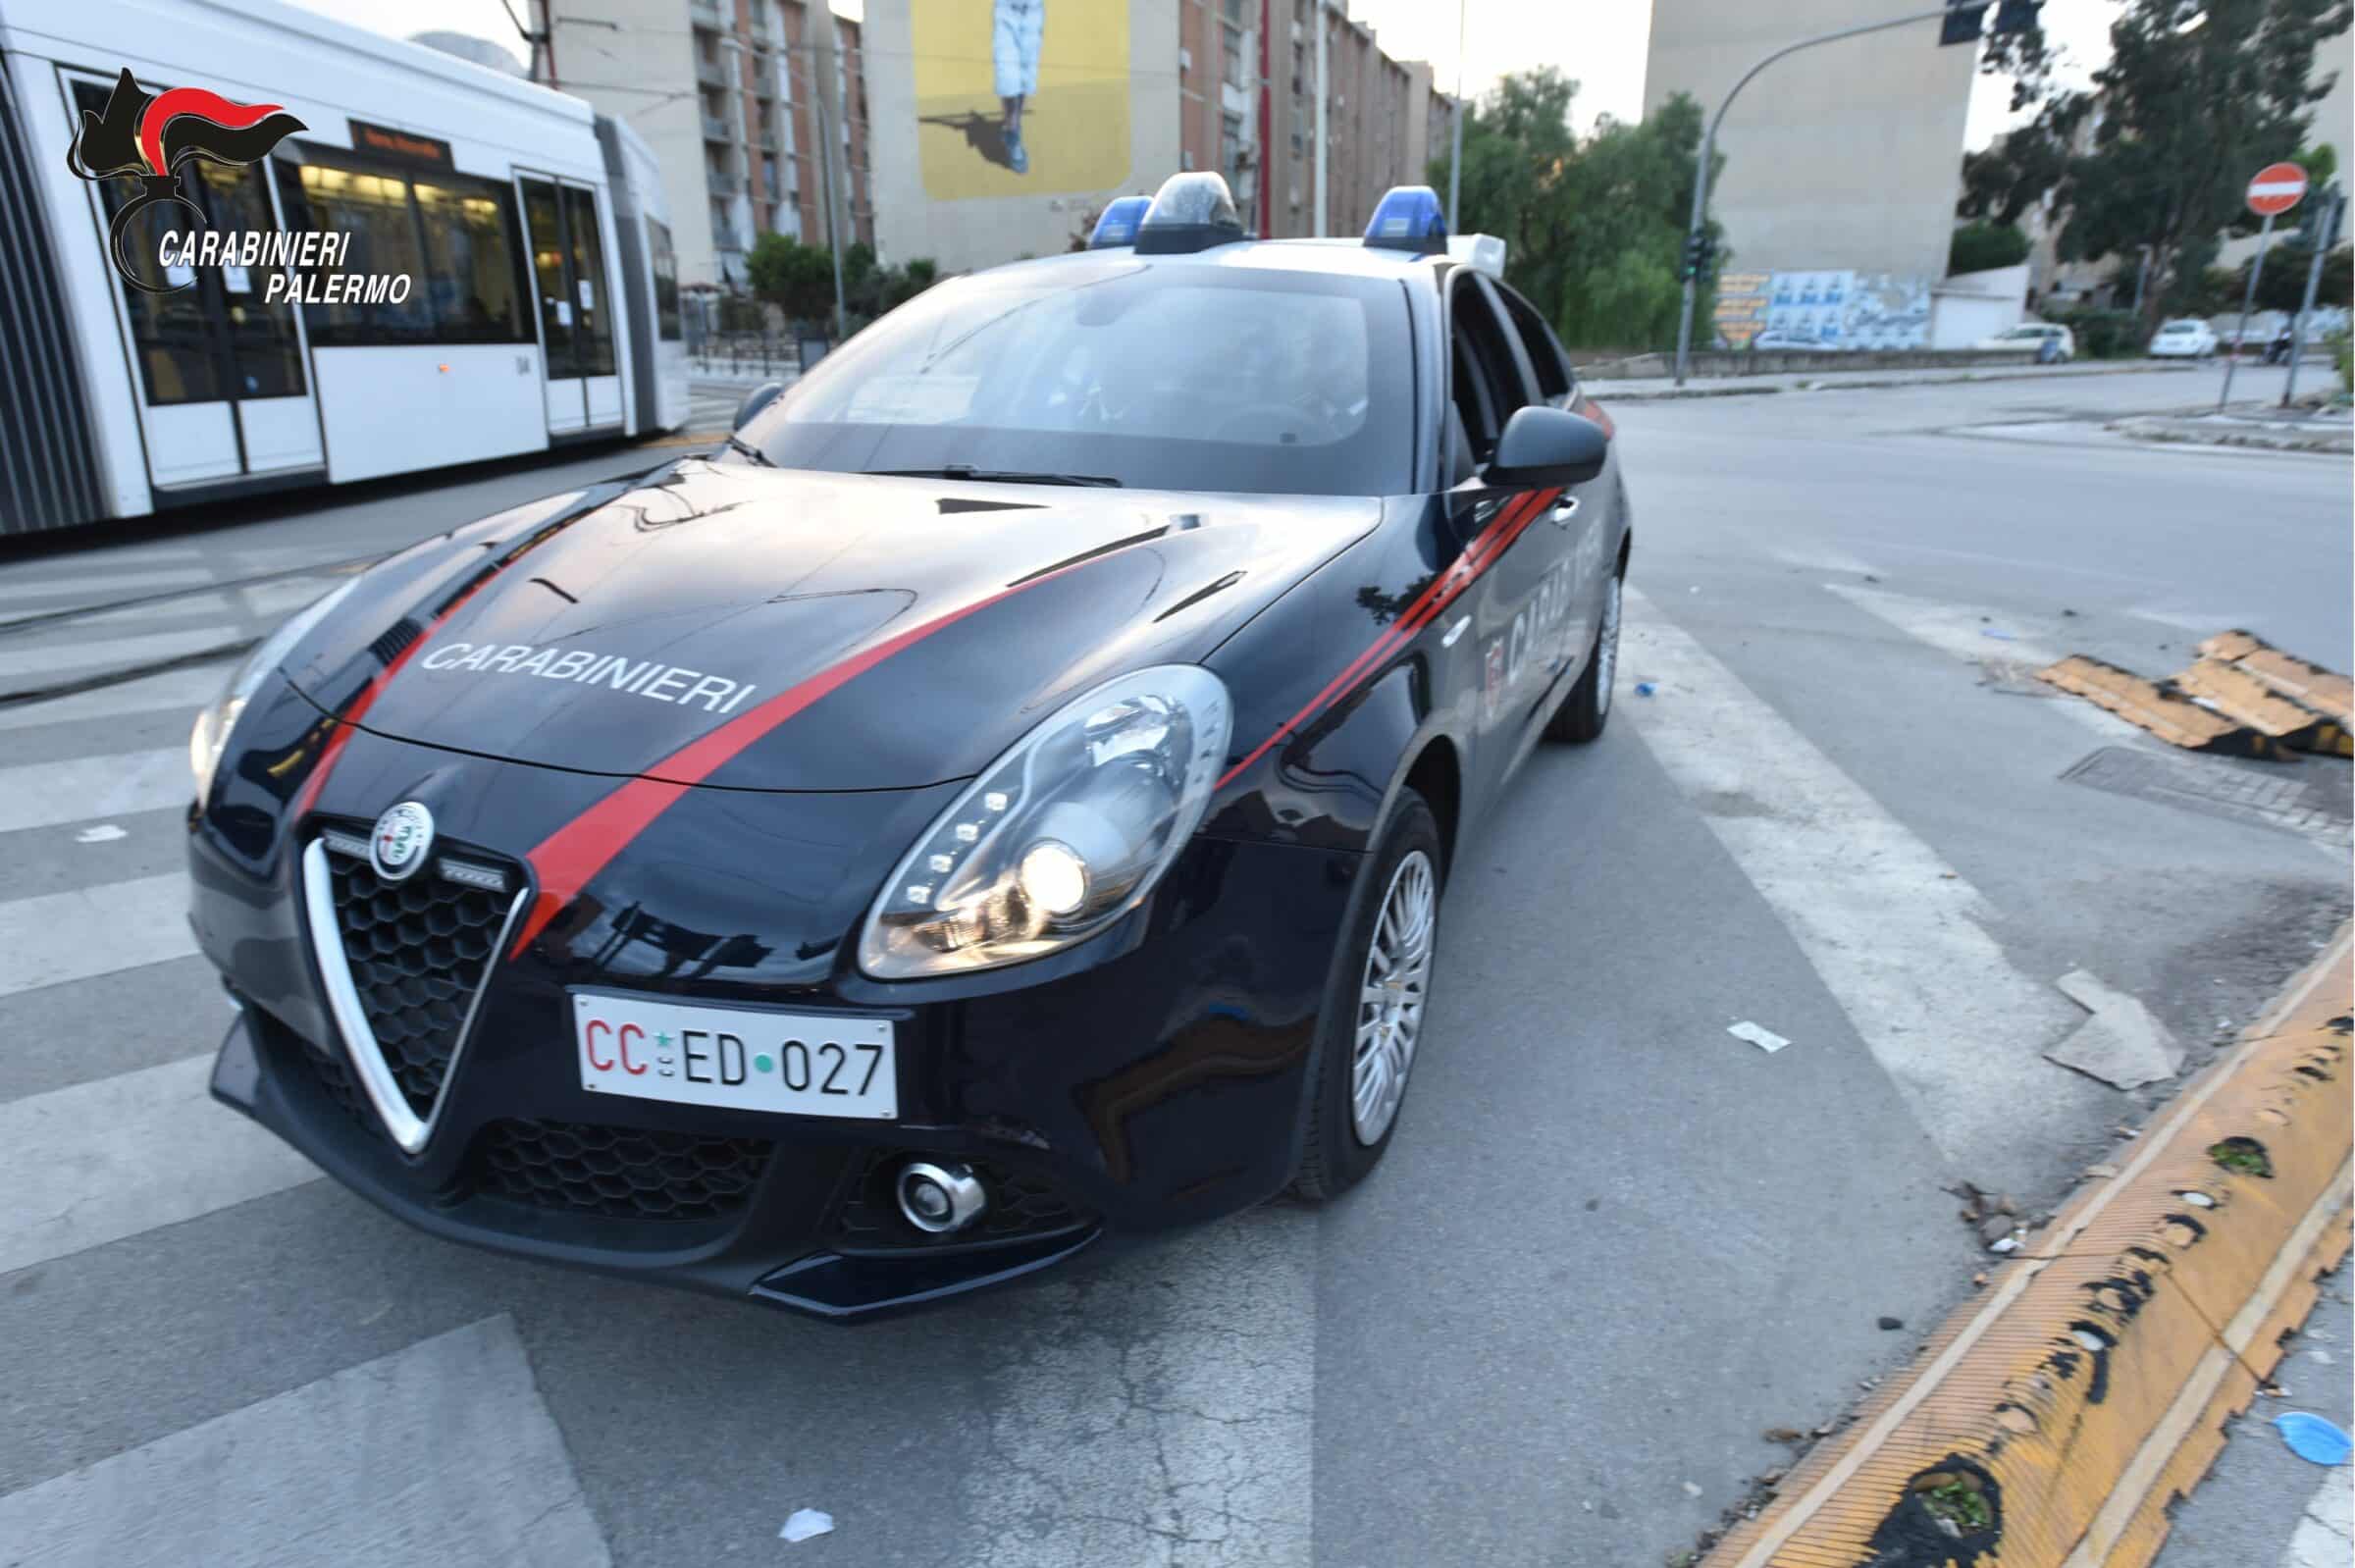 Palermo, spacciatore lavorava in “smart working”: arrestato un 25enne